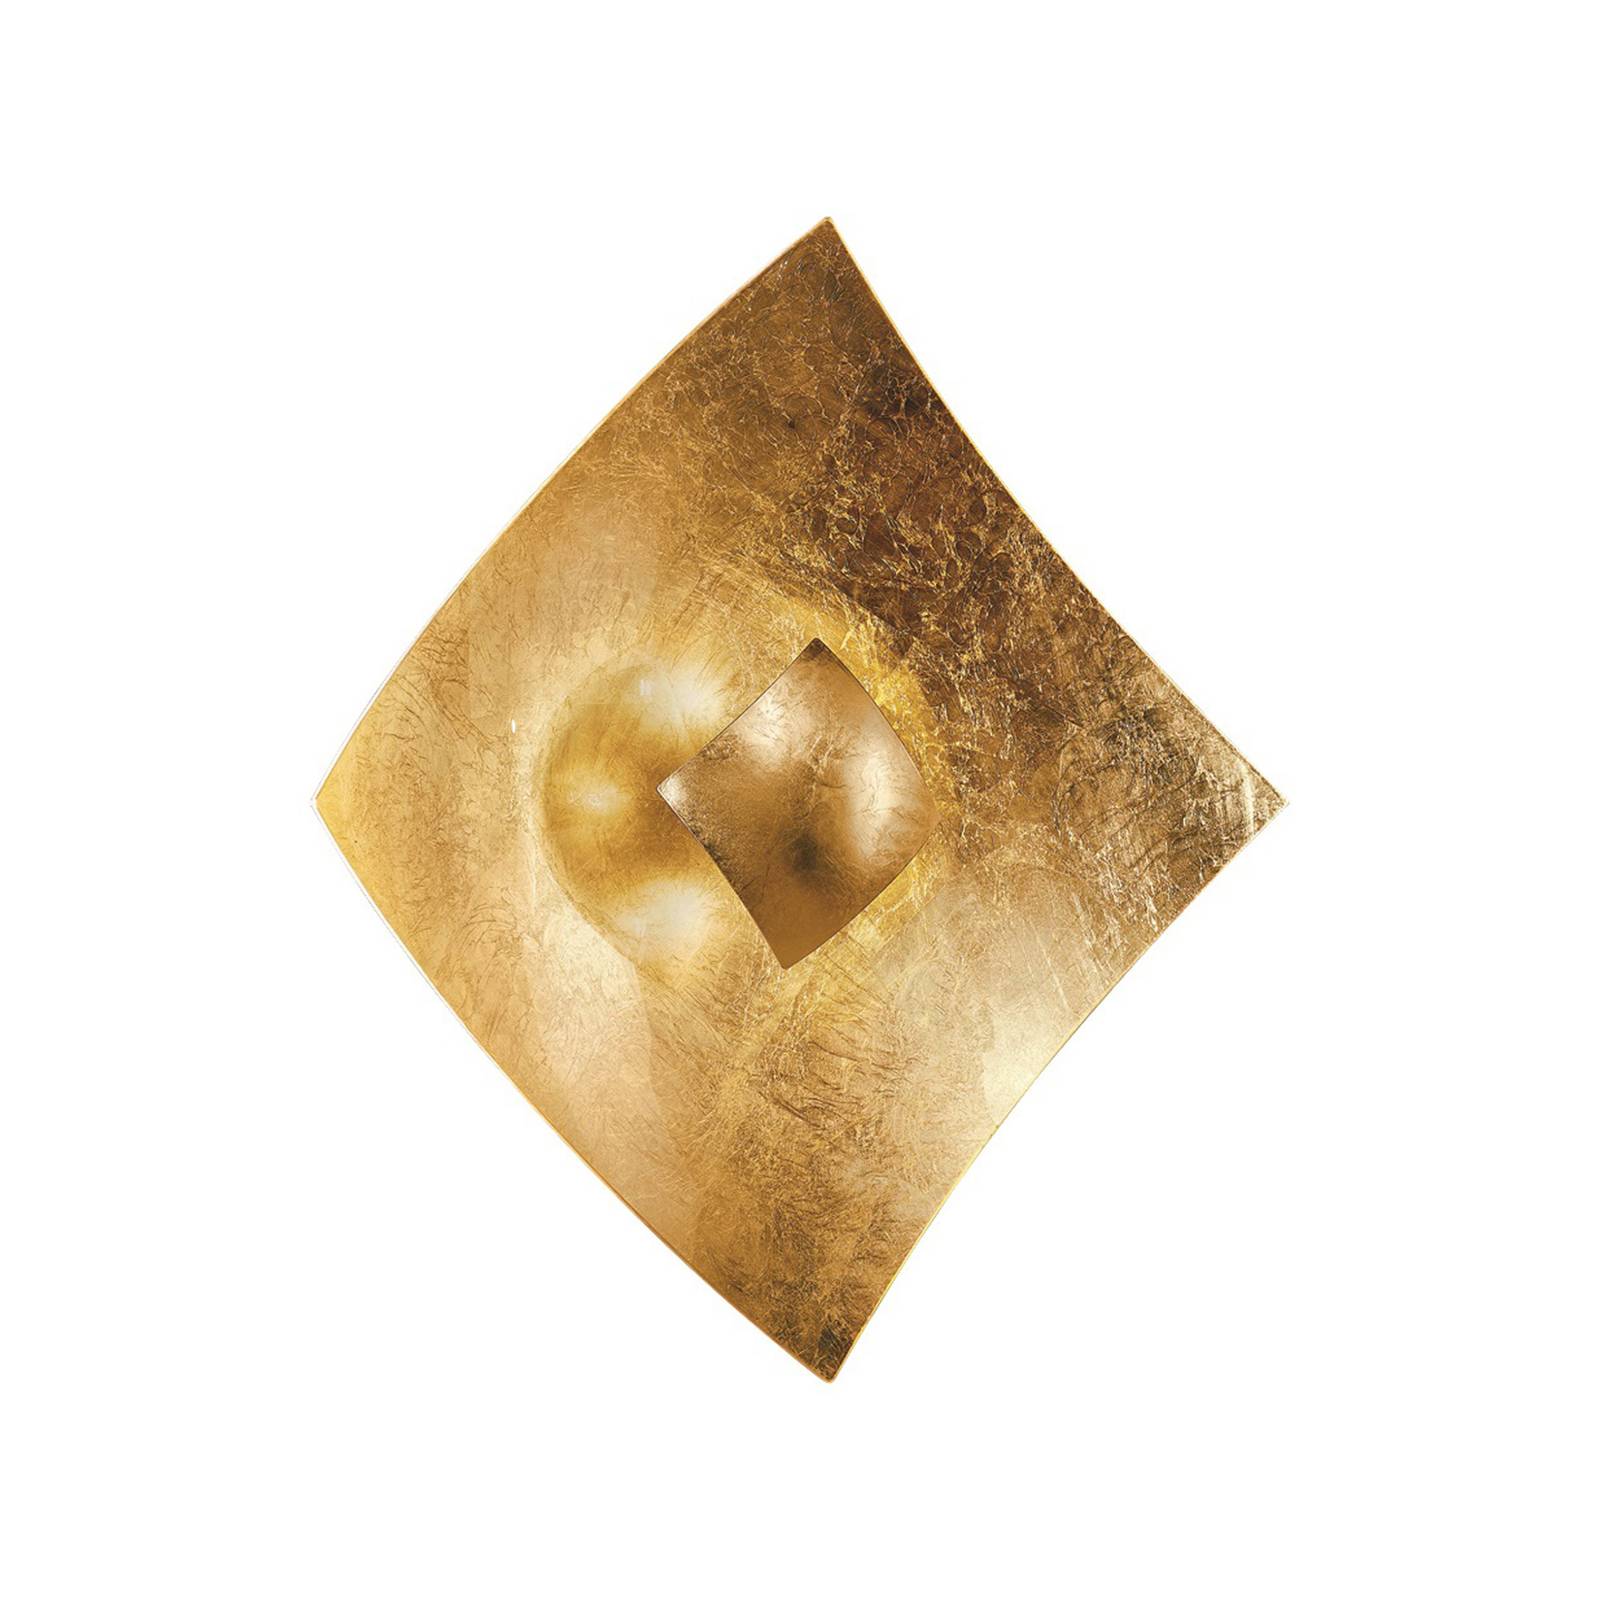 Kögl Wandleuchte Quadrangolo mit Blattgold, 18 x 18 cm